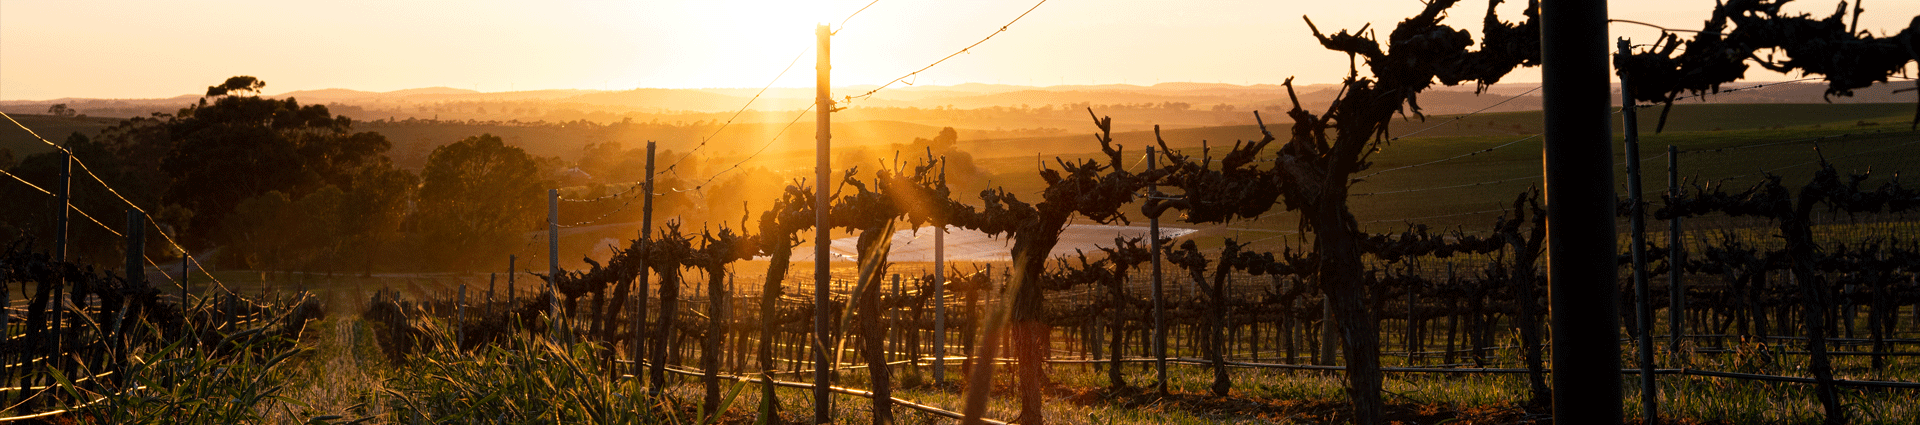 Botantic vineyard at sunrise